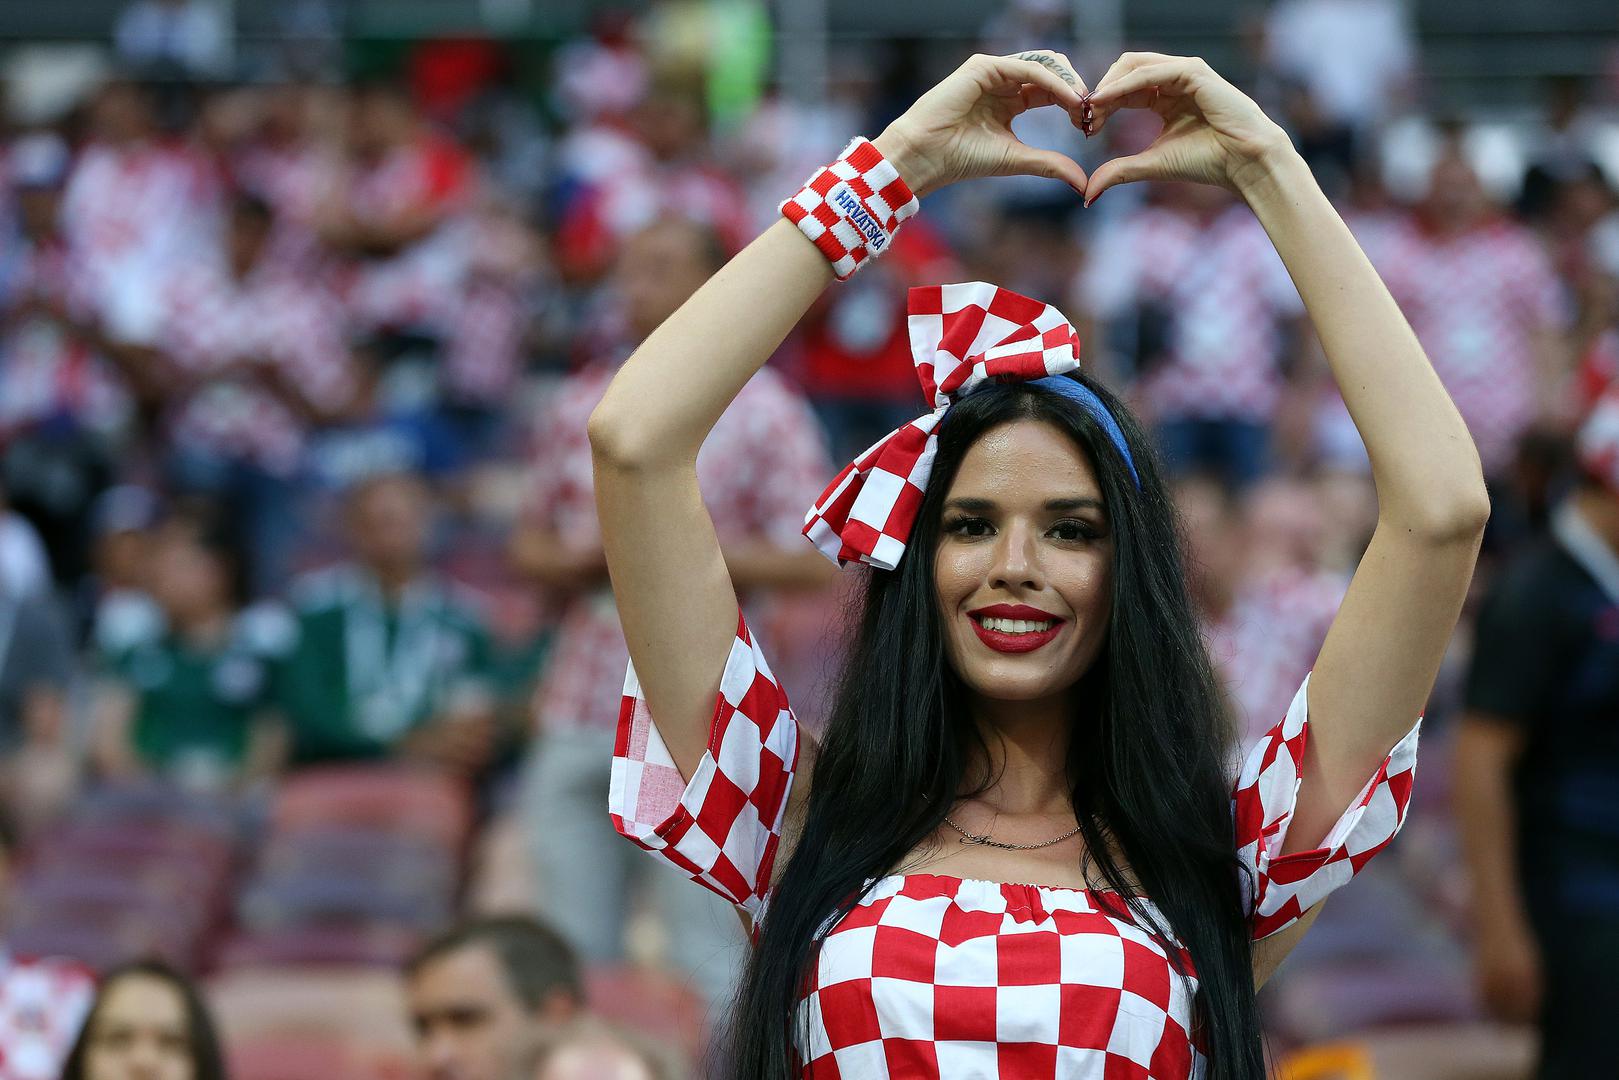 Ivana Knoll vjerojatno je najpoznatija hrvatska navijačica koja je svoju popularnost stekla tijekom Svjetskog prvenstva u Rusiji prošle godine. 